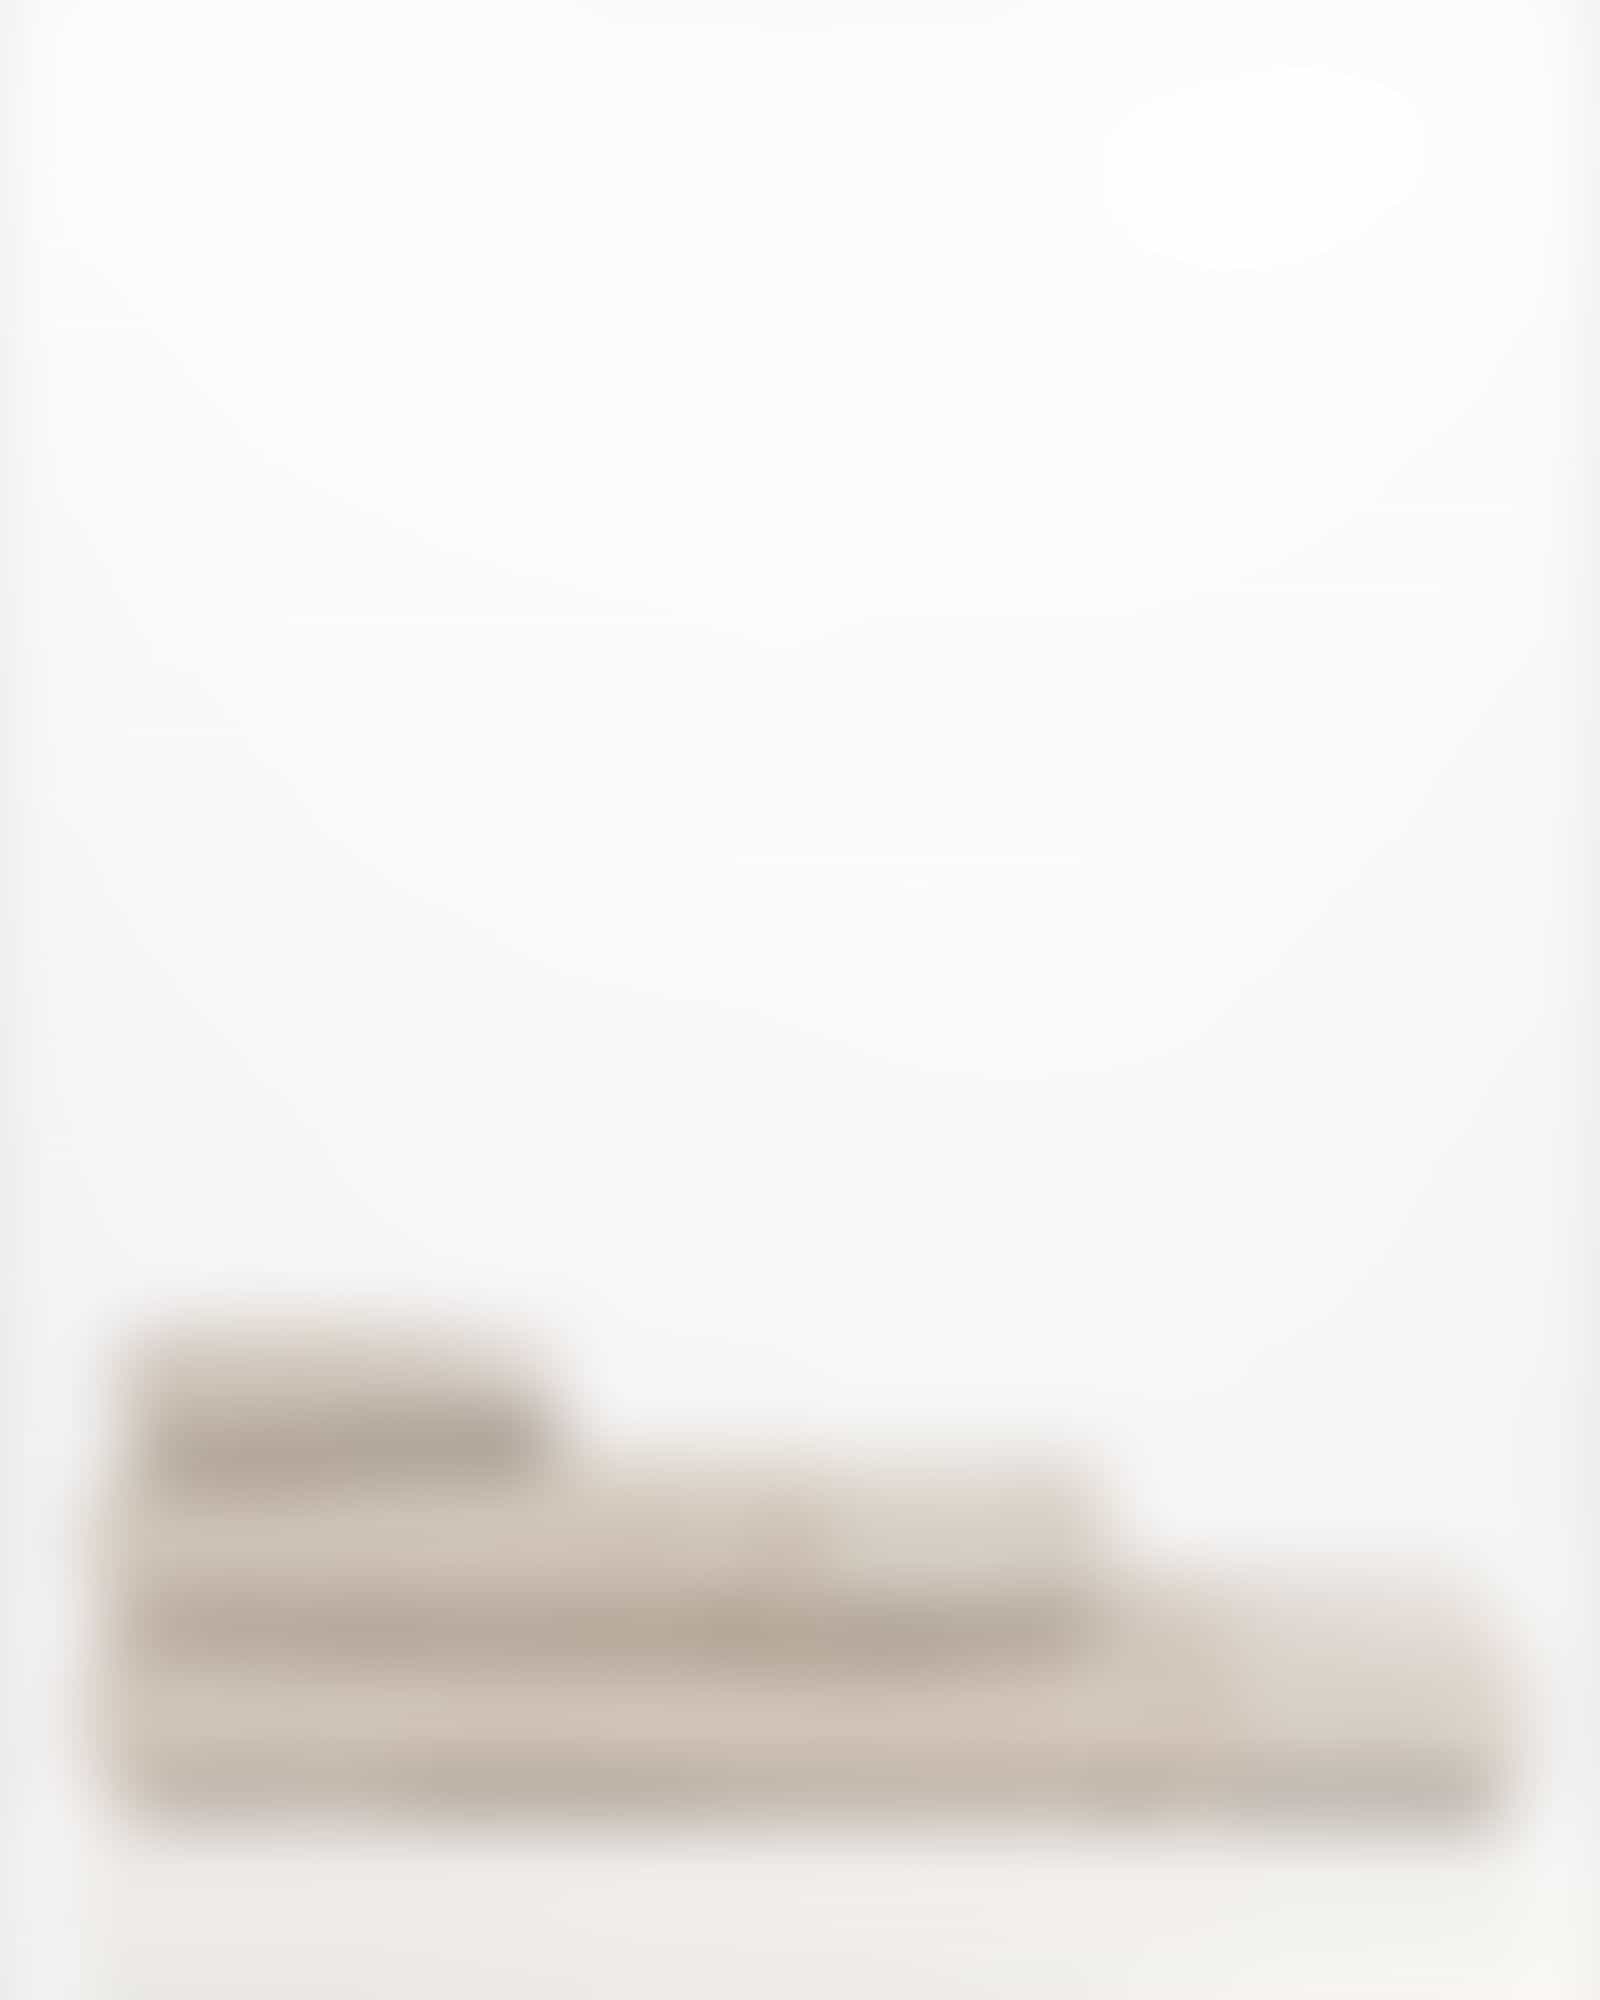 Möve Handtücher Wellbeing Perlstruktur - Farbe: cashmere - 713 - Waschhandschuh 15x20 cm Detailbild 3